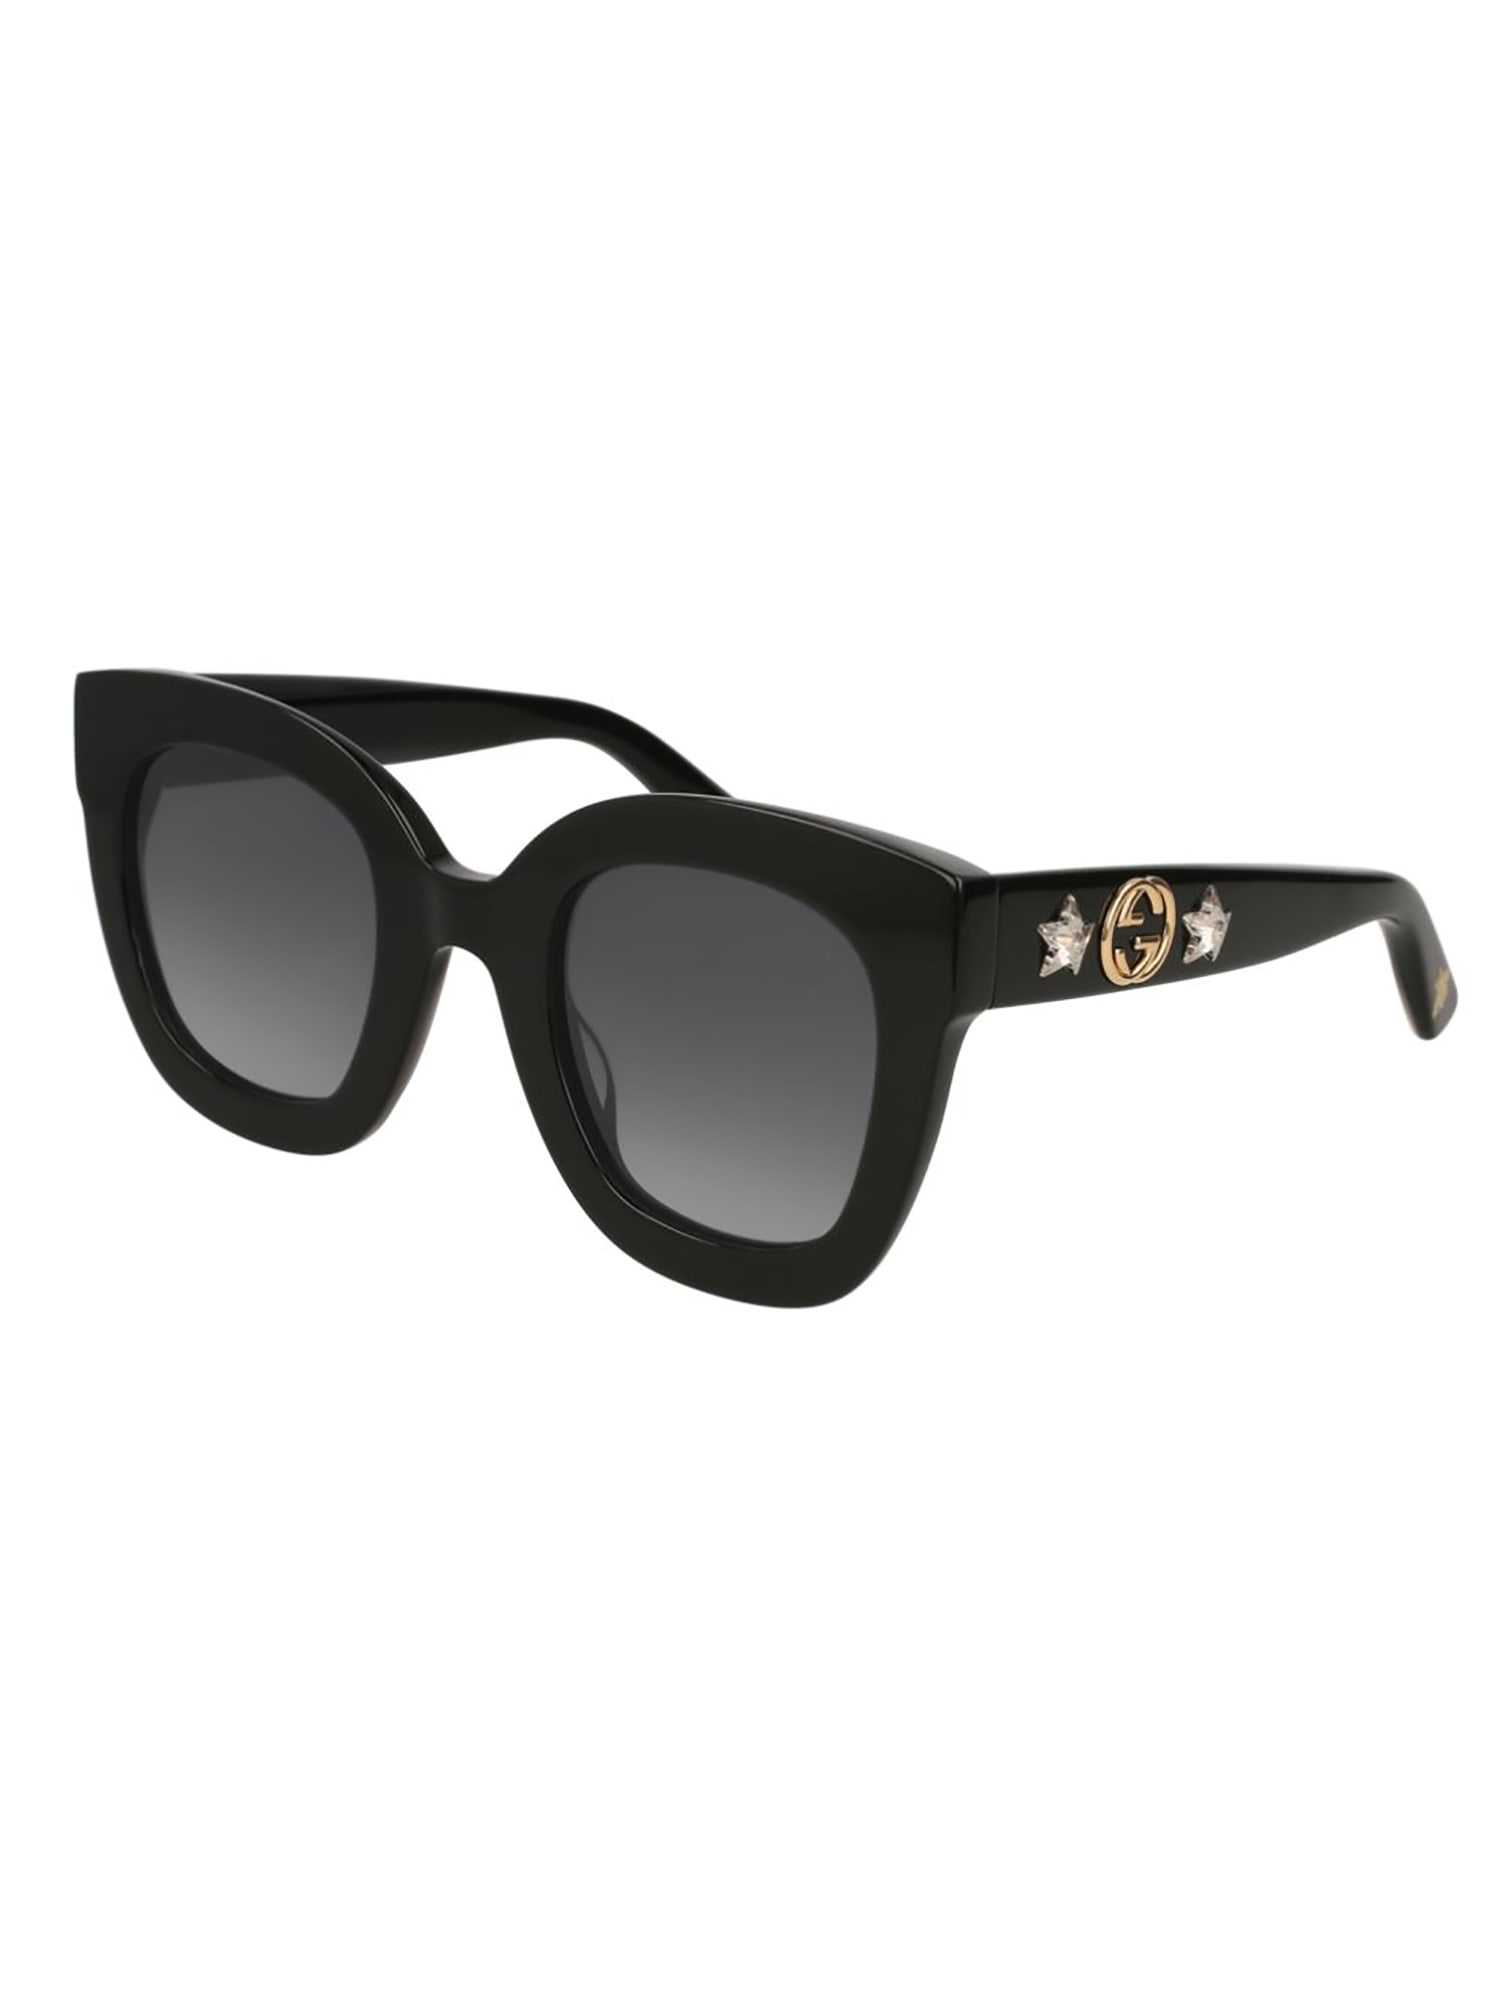 Gucci Gg0208s Sunglasses In Black Black Grey